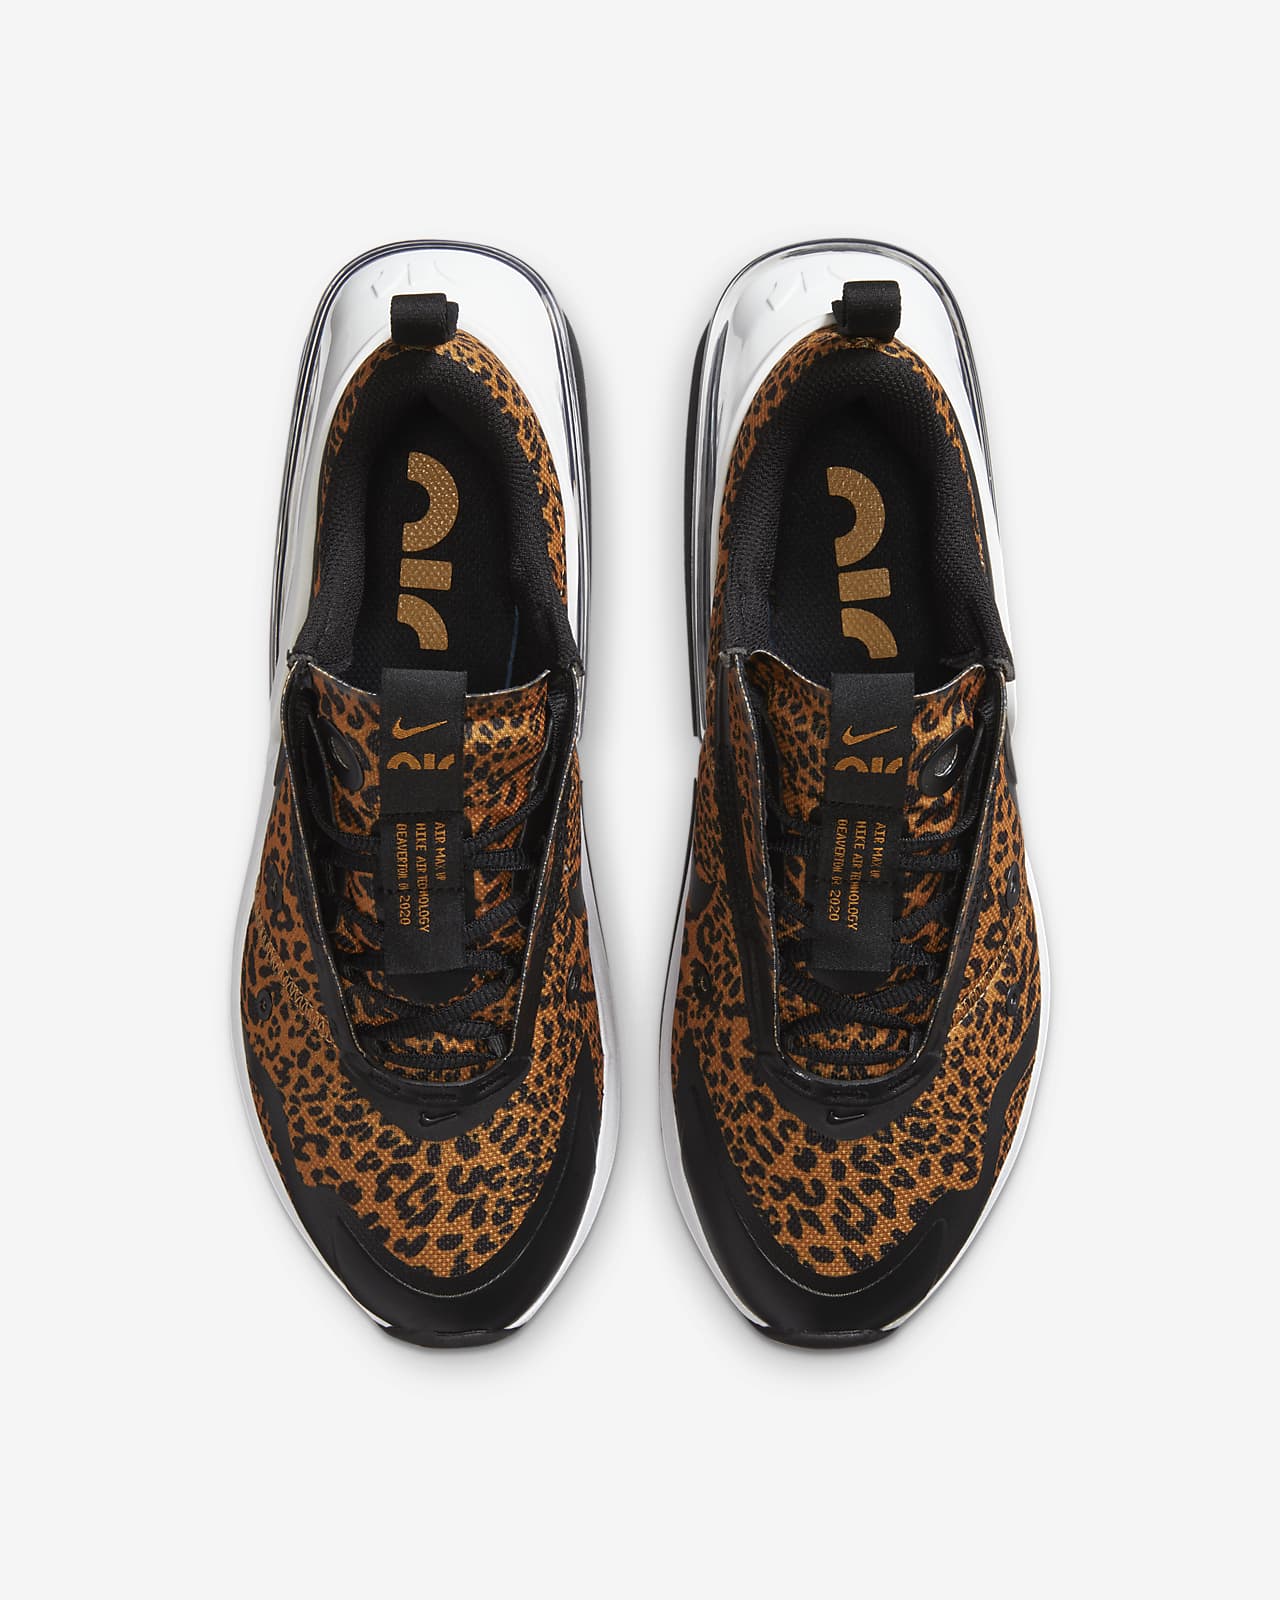 nike leopard print shoes air max